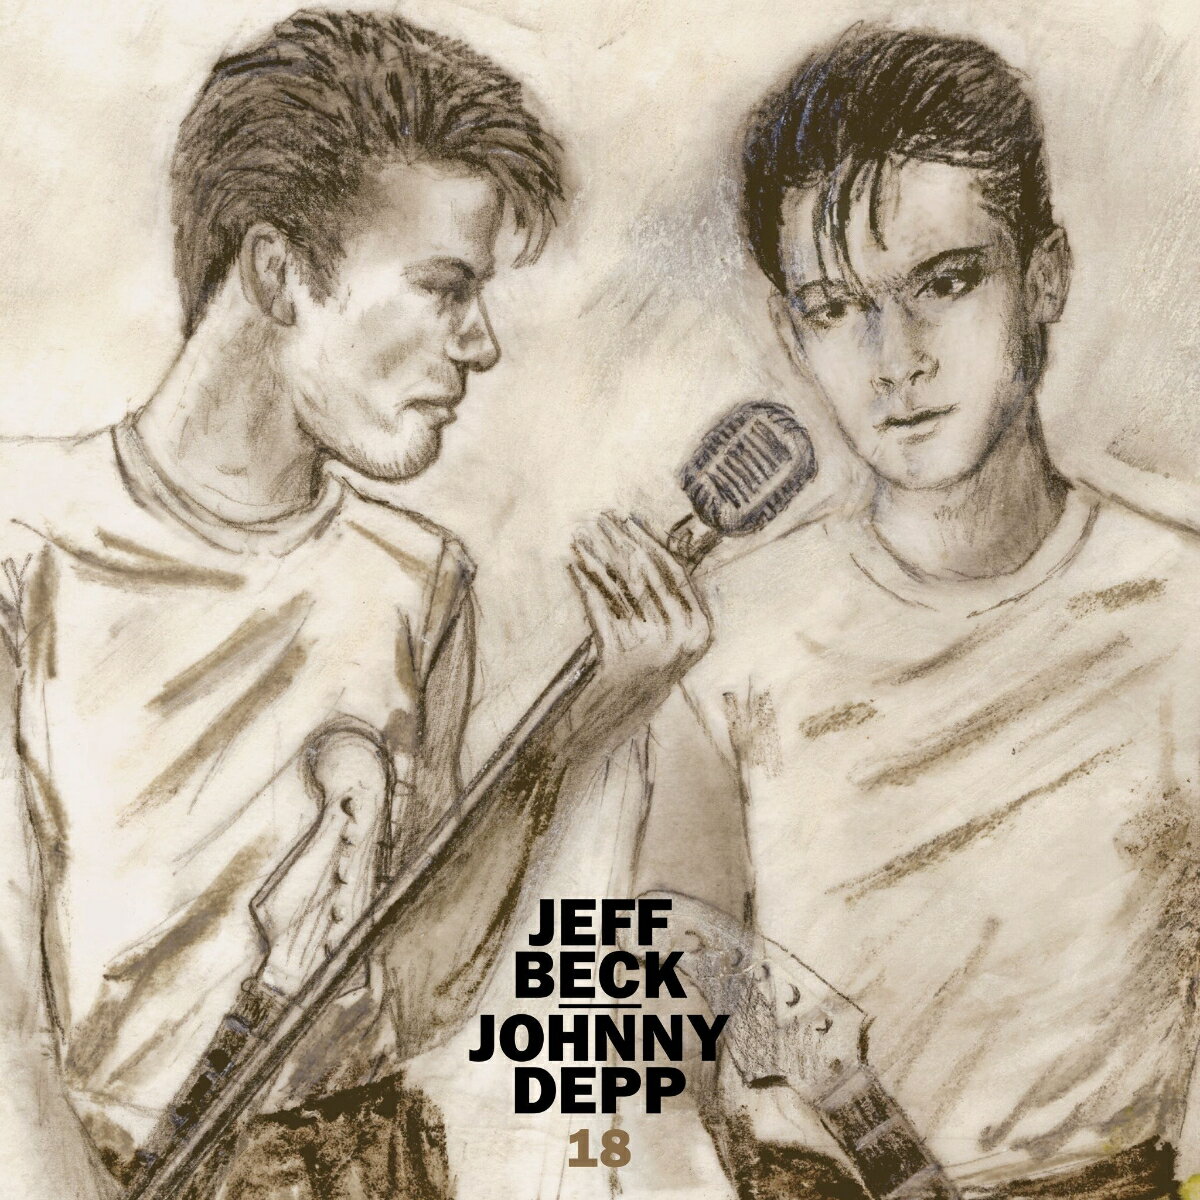 奇跡の共演! ジェフ・ベックとジョニー・デップによるアルバム完成!

全世界が認める伝説のギタリスト、ジェフ・ベックと、ハリウッド・ヴァンパイアーズのジョニー・デップがタッグを組んだ
驚愕のプロジェクト、ジェフ・ベック・アンド・ジョニー・デップによるスタジオ・アルバム『18』。
ジョン・レノンの「孤独」を始め、ヴェルヴェット・アンダーグラウンドのクラシック「毛皮のヴィーナス」や、
ジョニー・デップの感情豊かな歌声が聴けるエヴァリー・ブラザーズのバラード曲「レット・イット・ビー・ミー」や
マーヴィン・ゲイのソウル・クラシック「ホワッツ・ゴーイン・オン」、
そしてジェフ・ベックがギターの神と称されるその所以をたっぷりと堪能できるデイヴィ・スピラーンの「ミッドナイト・ウォーカー」や、
ビーチ・ボーイズのマスターピース『ペット・サウンズ』から「キャロライン・ノー」と「ドント・トーク」といった楽曲、
そしてジョニー・デップのオリジナル曲2曲を含む全13曲を収録。